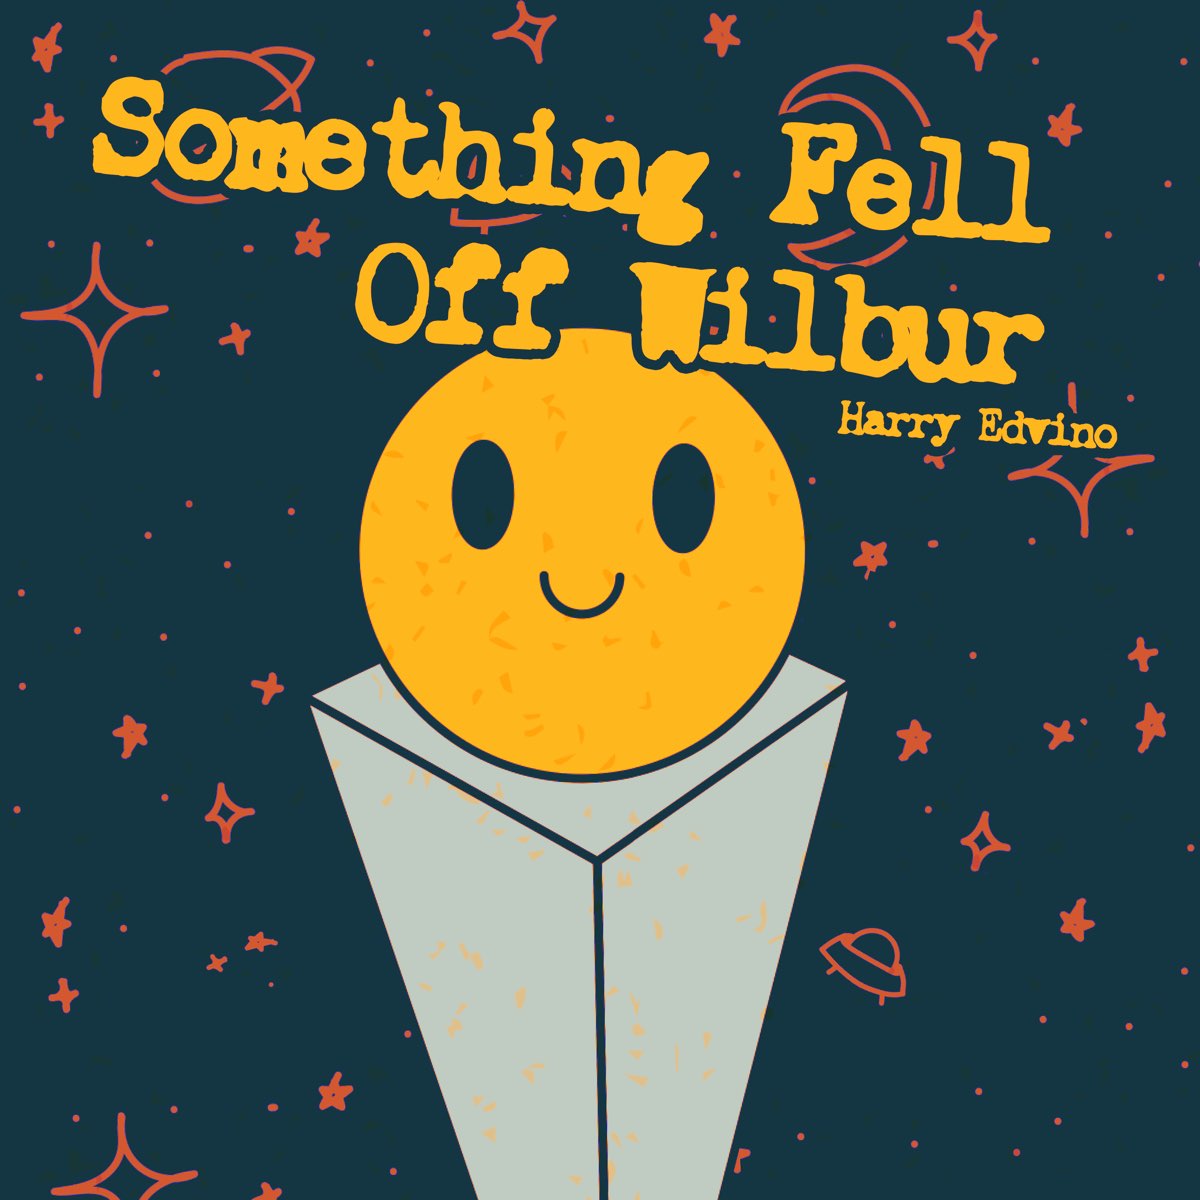 Fall something